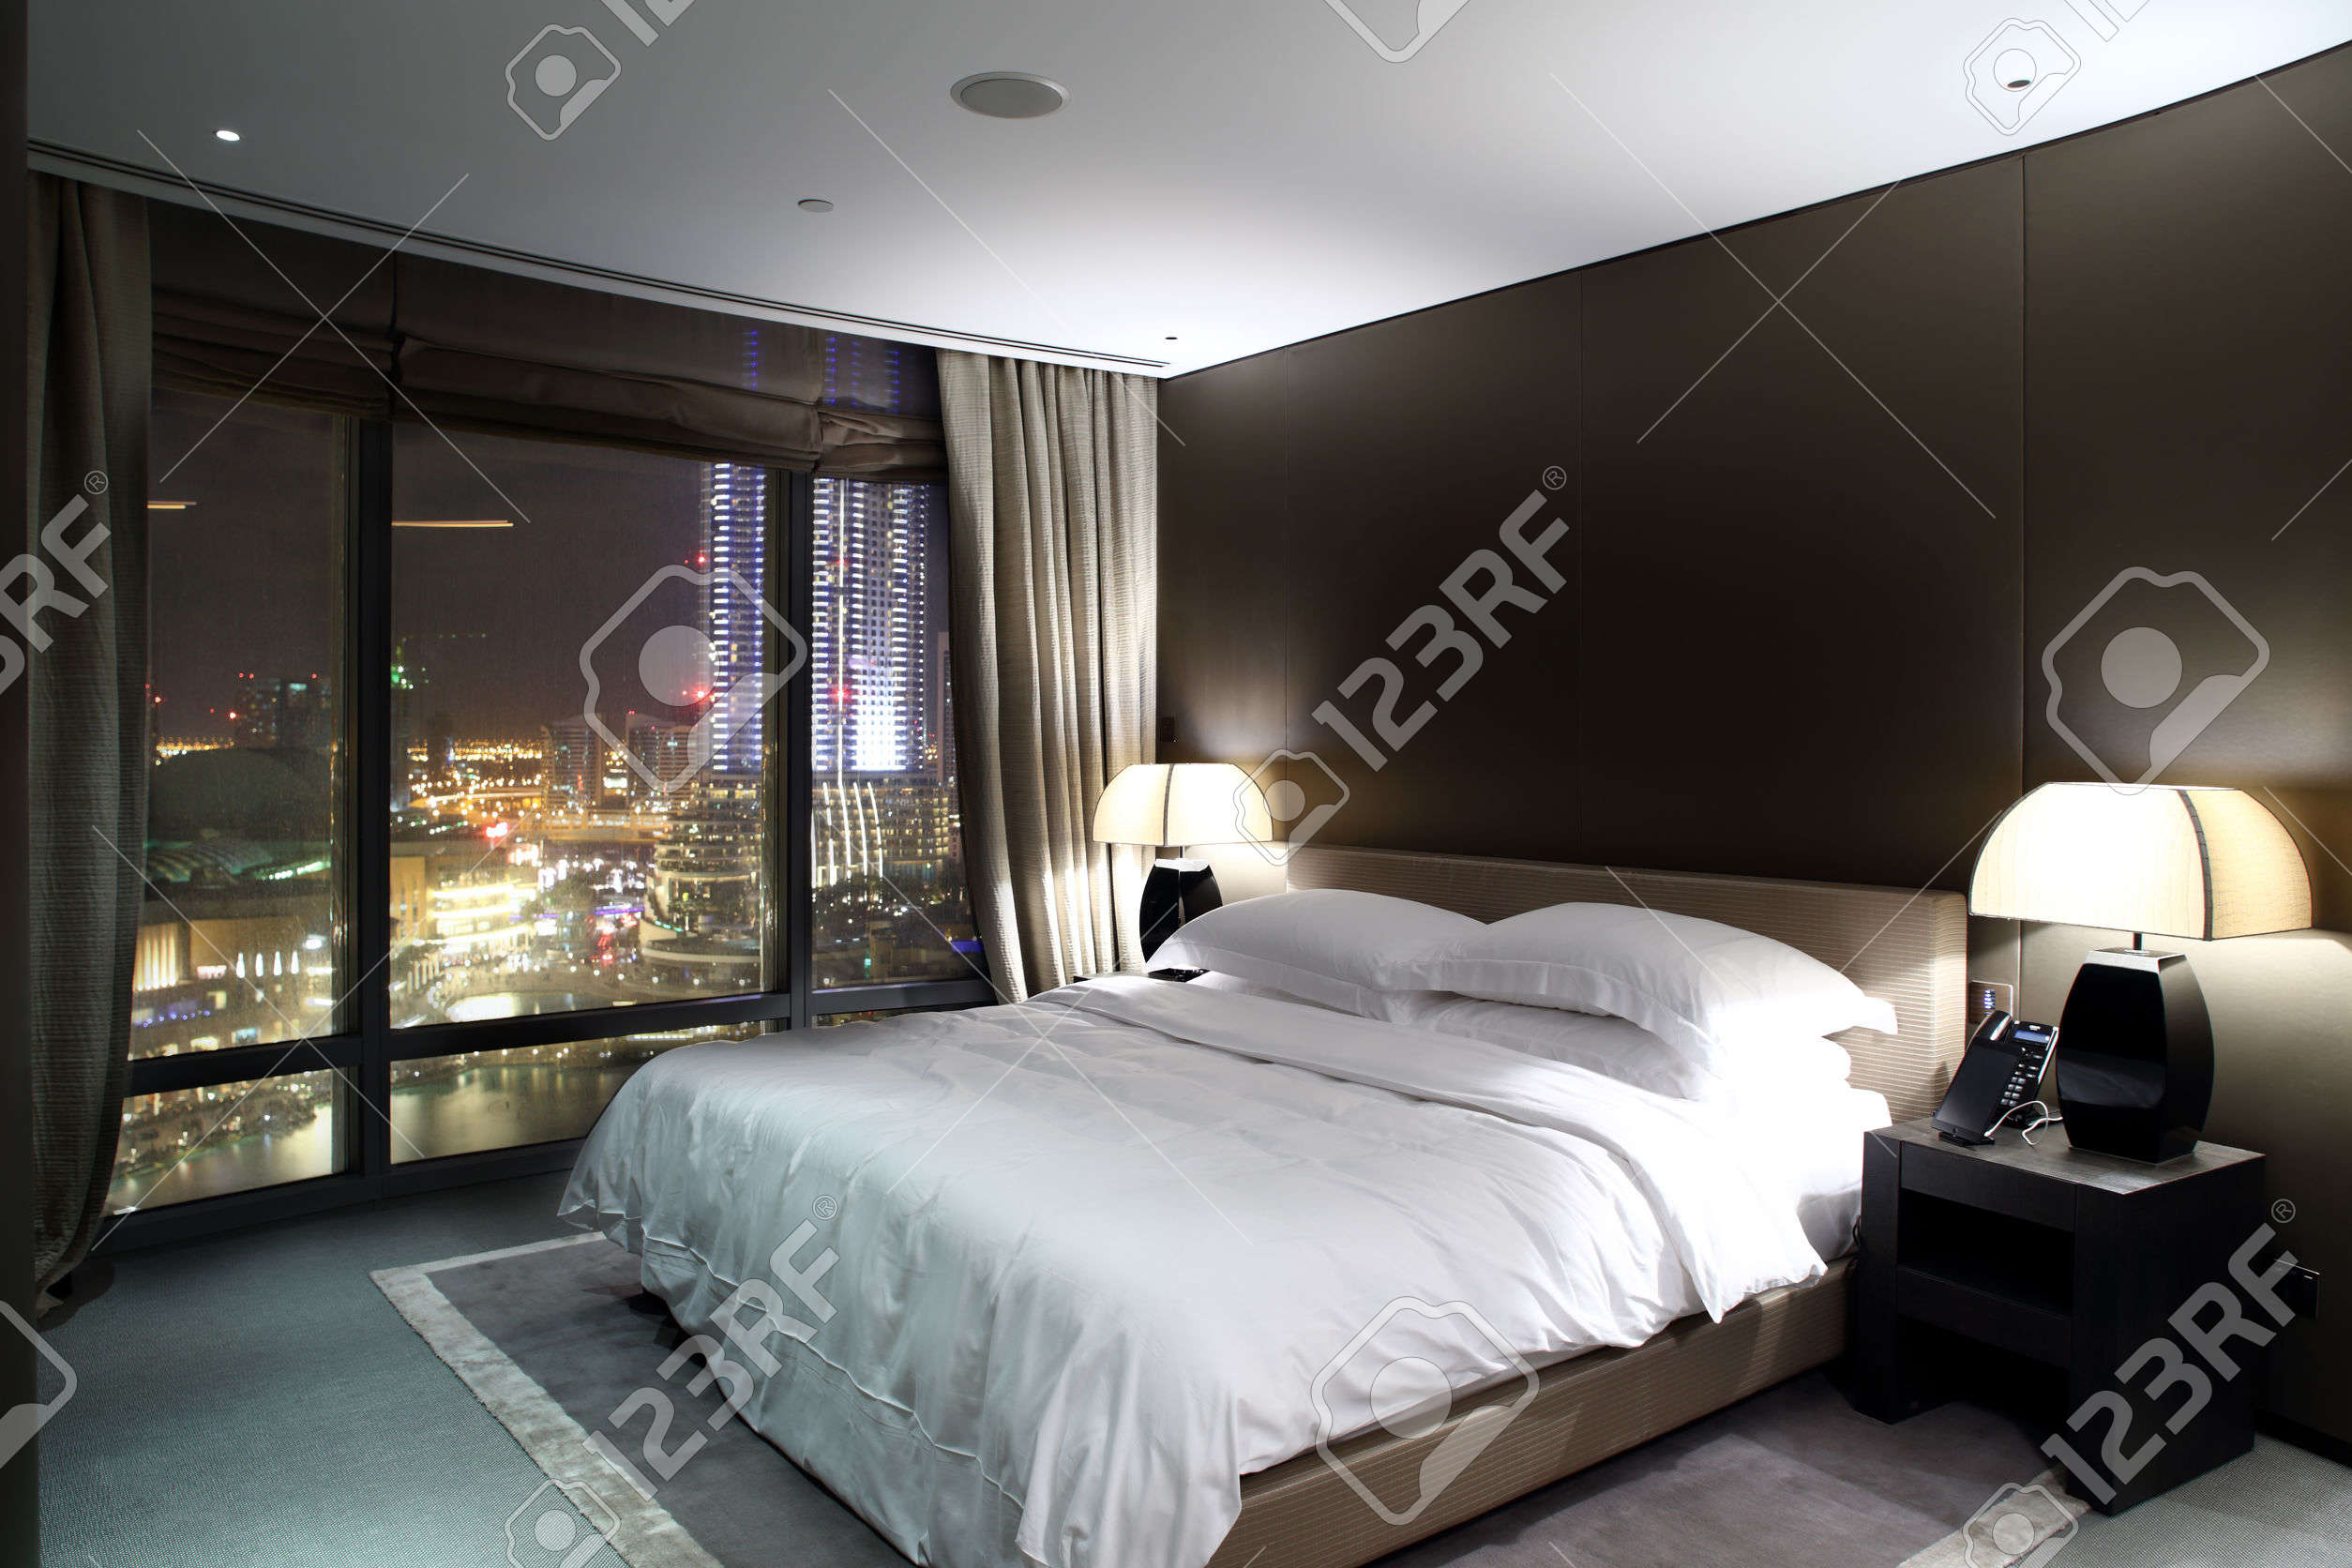 27974932-brillante-y-nuevo-interior-del-dormitorio-europeo-Foto-de